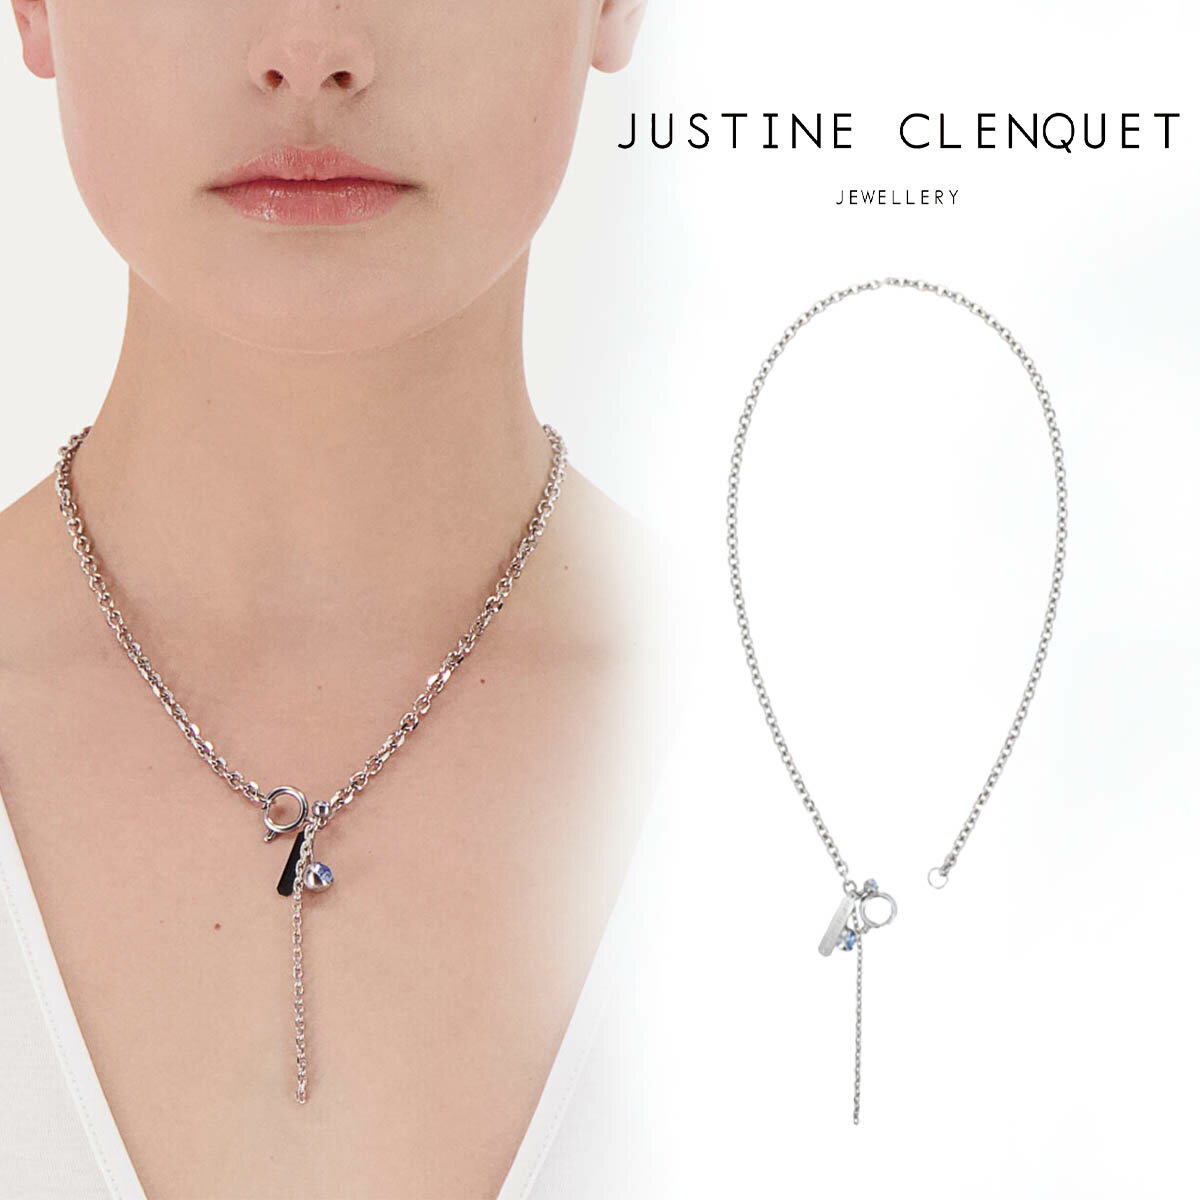 ジュスティーヌクランケ Justine Clenquet ネックレス Neve necklace チョーカー パラジウム ネックレス レディース メンズ アクセサリー